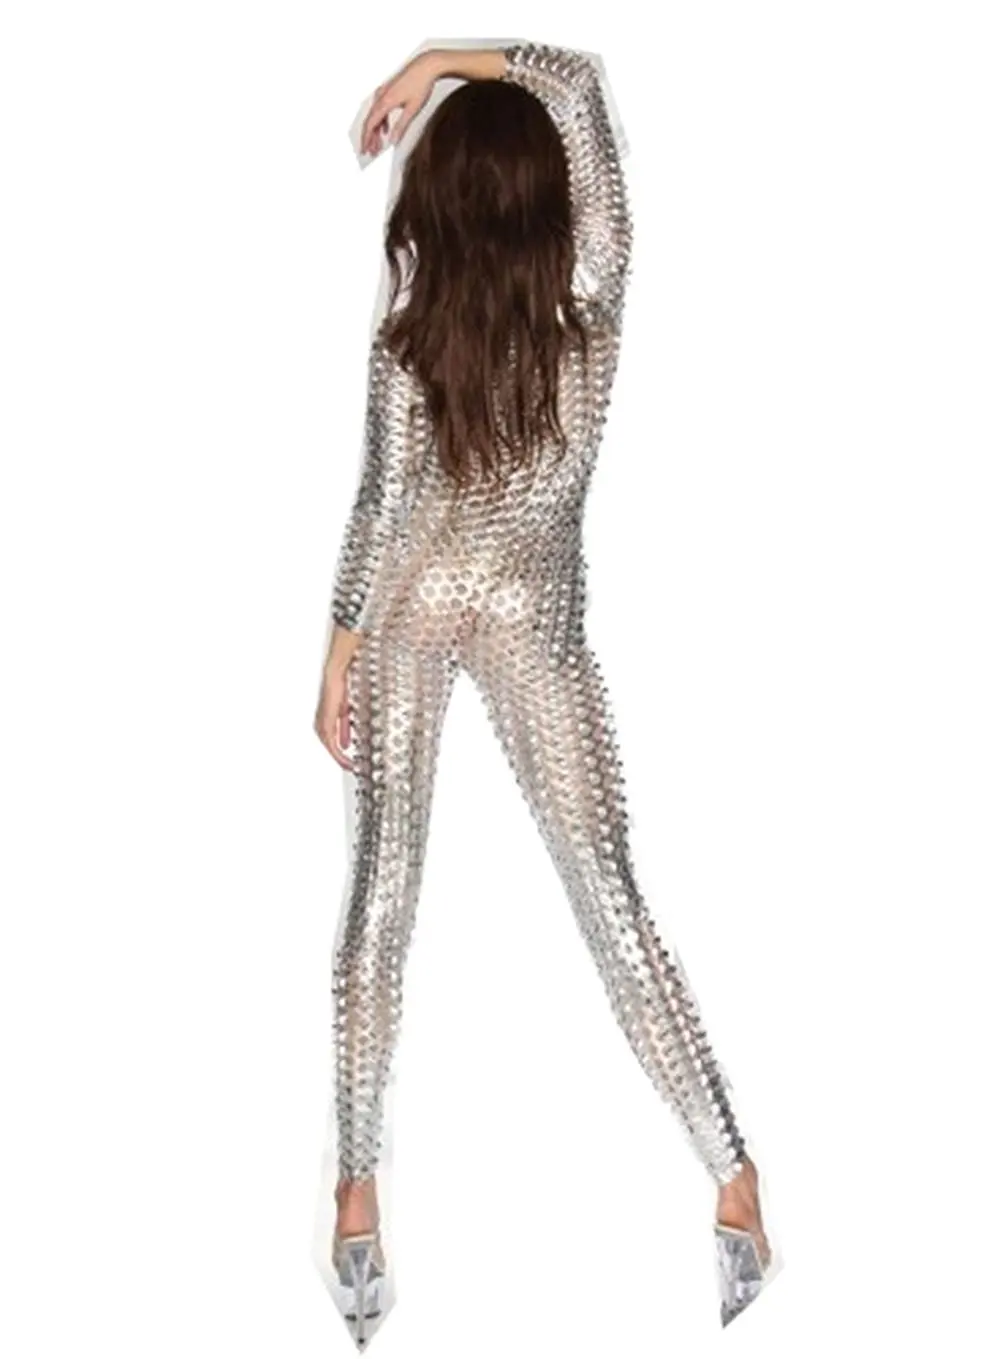 LZCMsoft женский сексуальный комбинезон с дырочками, цельный Металлический обтягивающий стрейч боди, нижнее белье для стриптиза, одежда для ночного клуба, сценический костюм